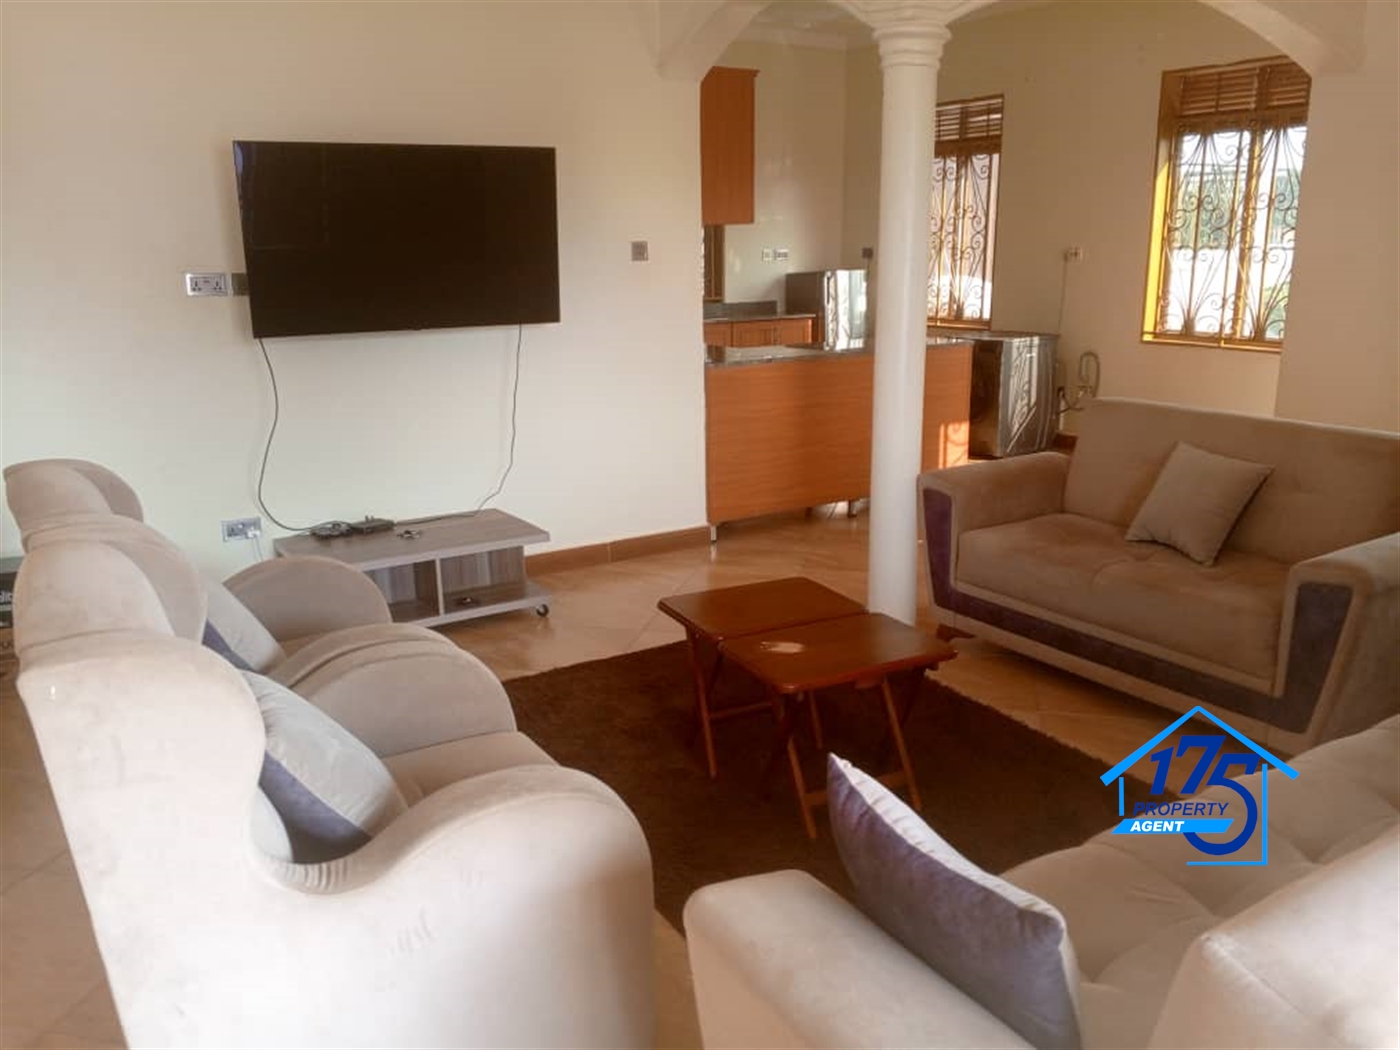 Duplex for rent in Kajjansi Kampala